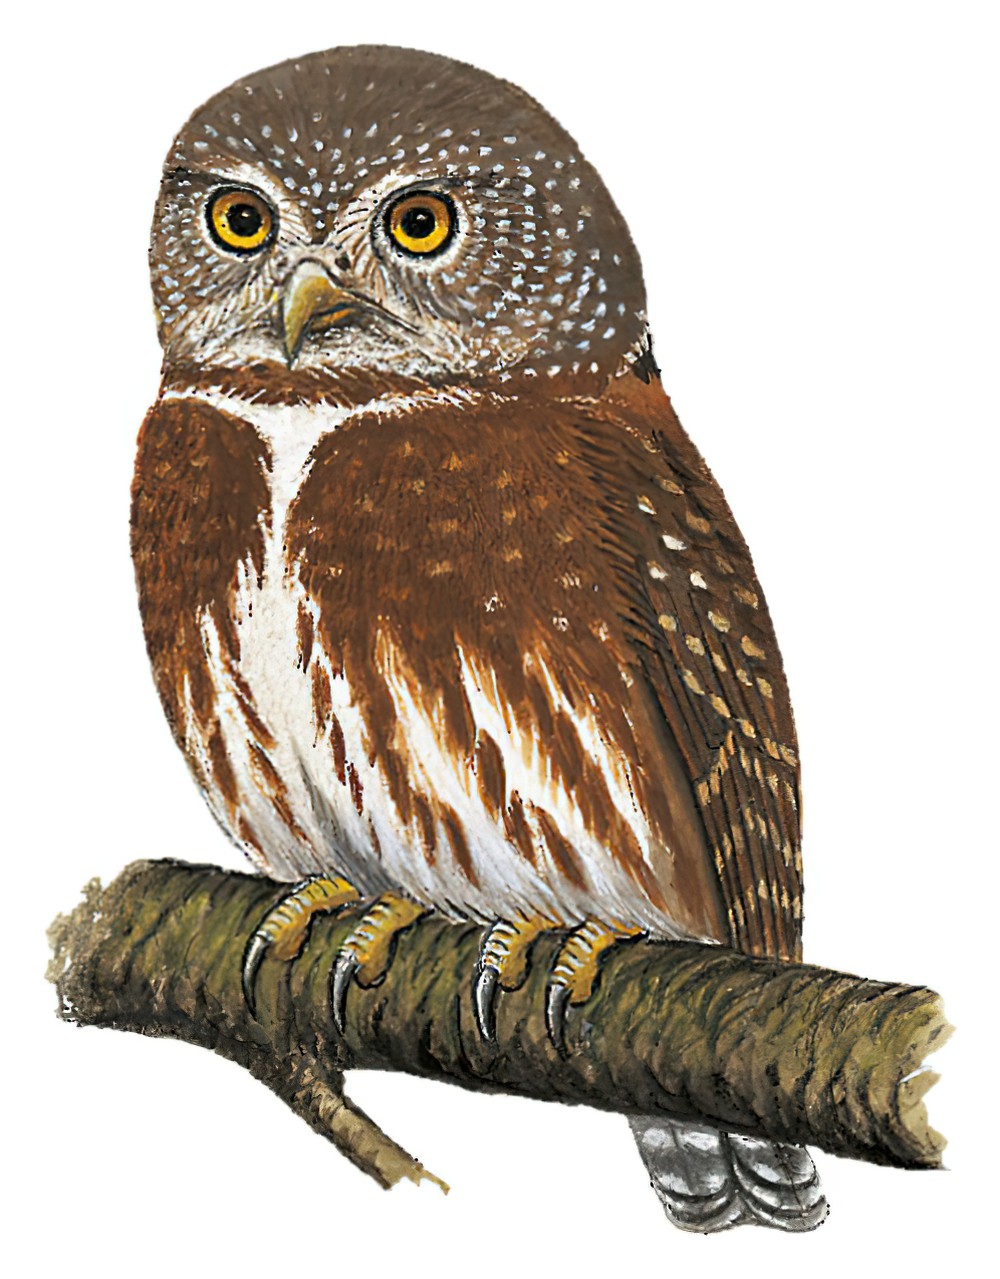 Tamaulipas Pygmy-Owl / Glaucidium sanchezi